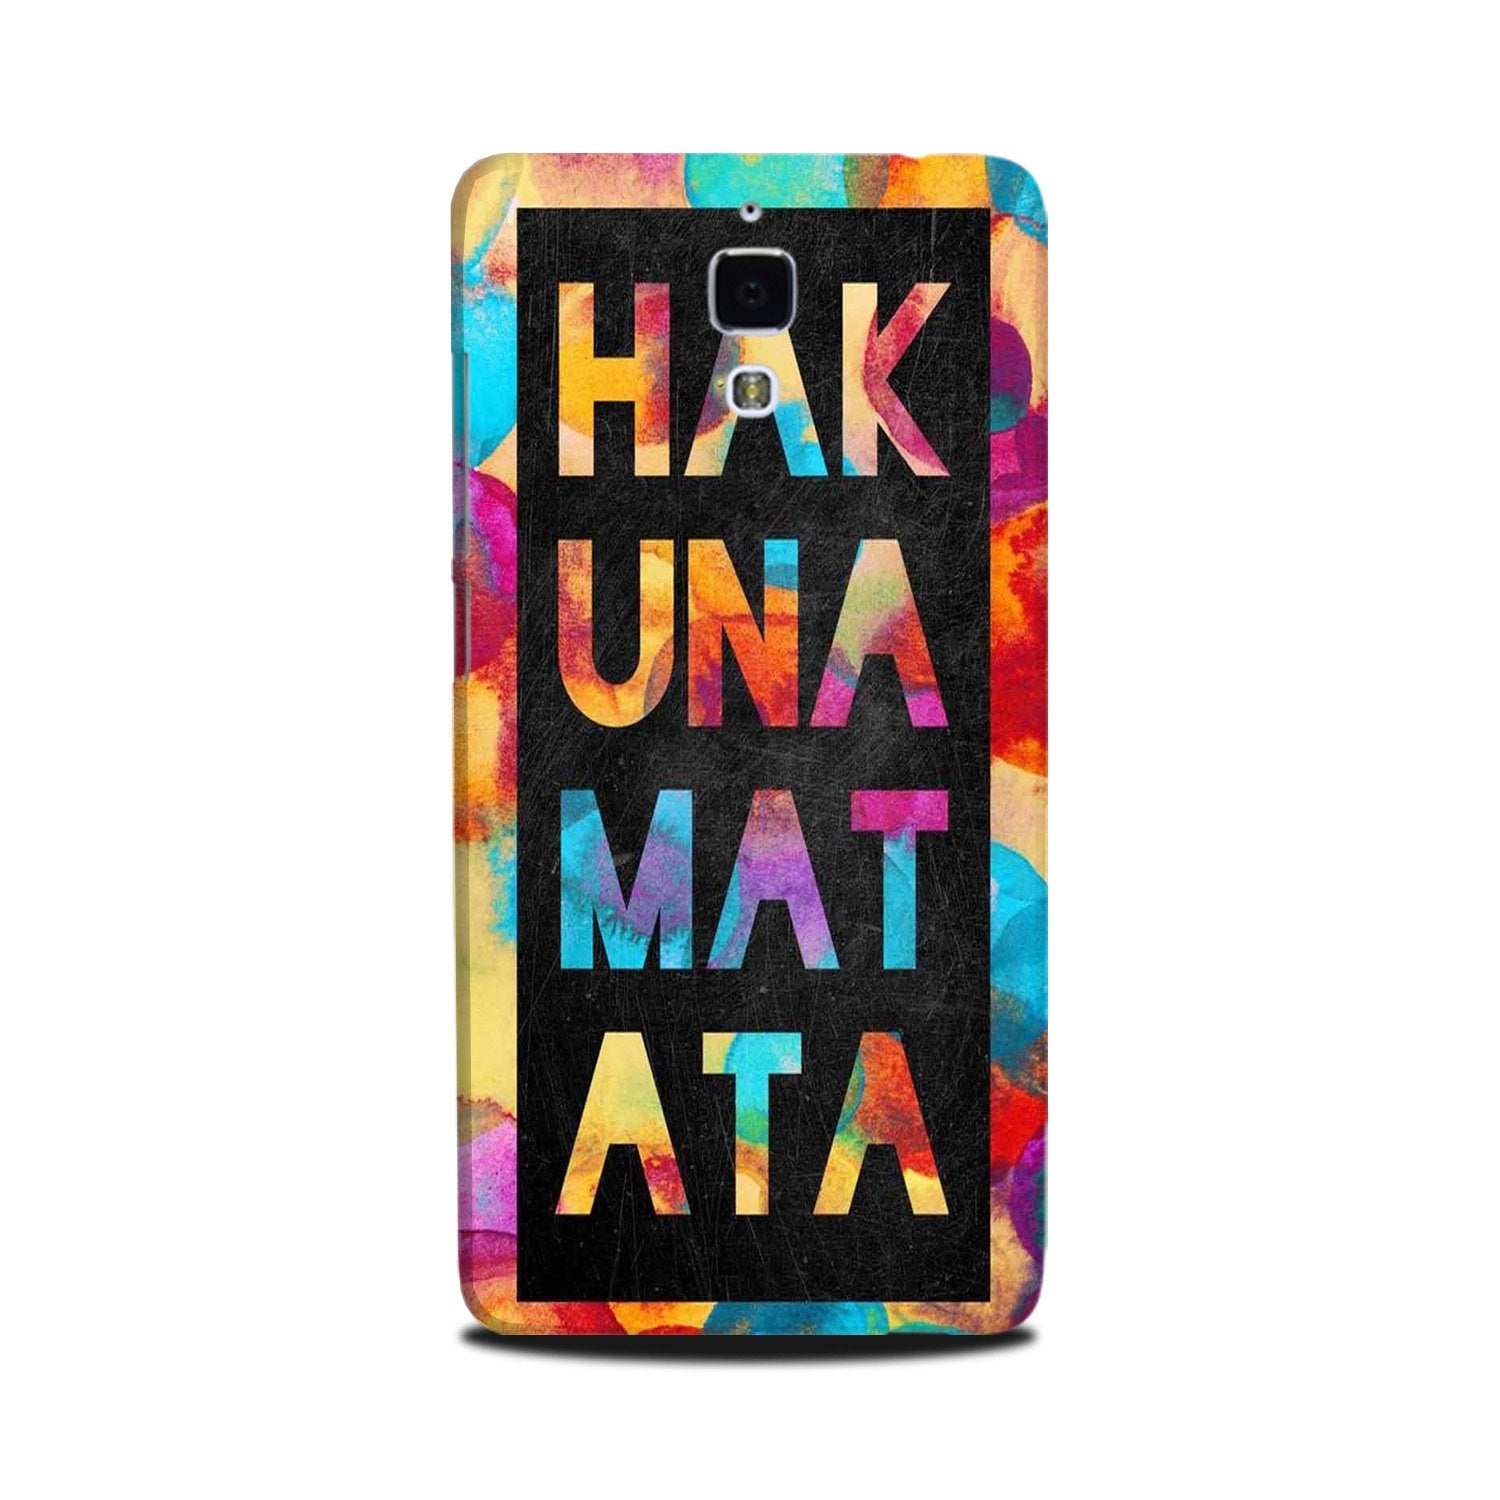 Hakuna Matata Mobile Back Case for Mi 4(Design - 323)